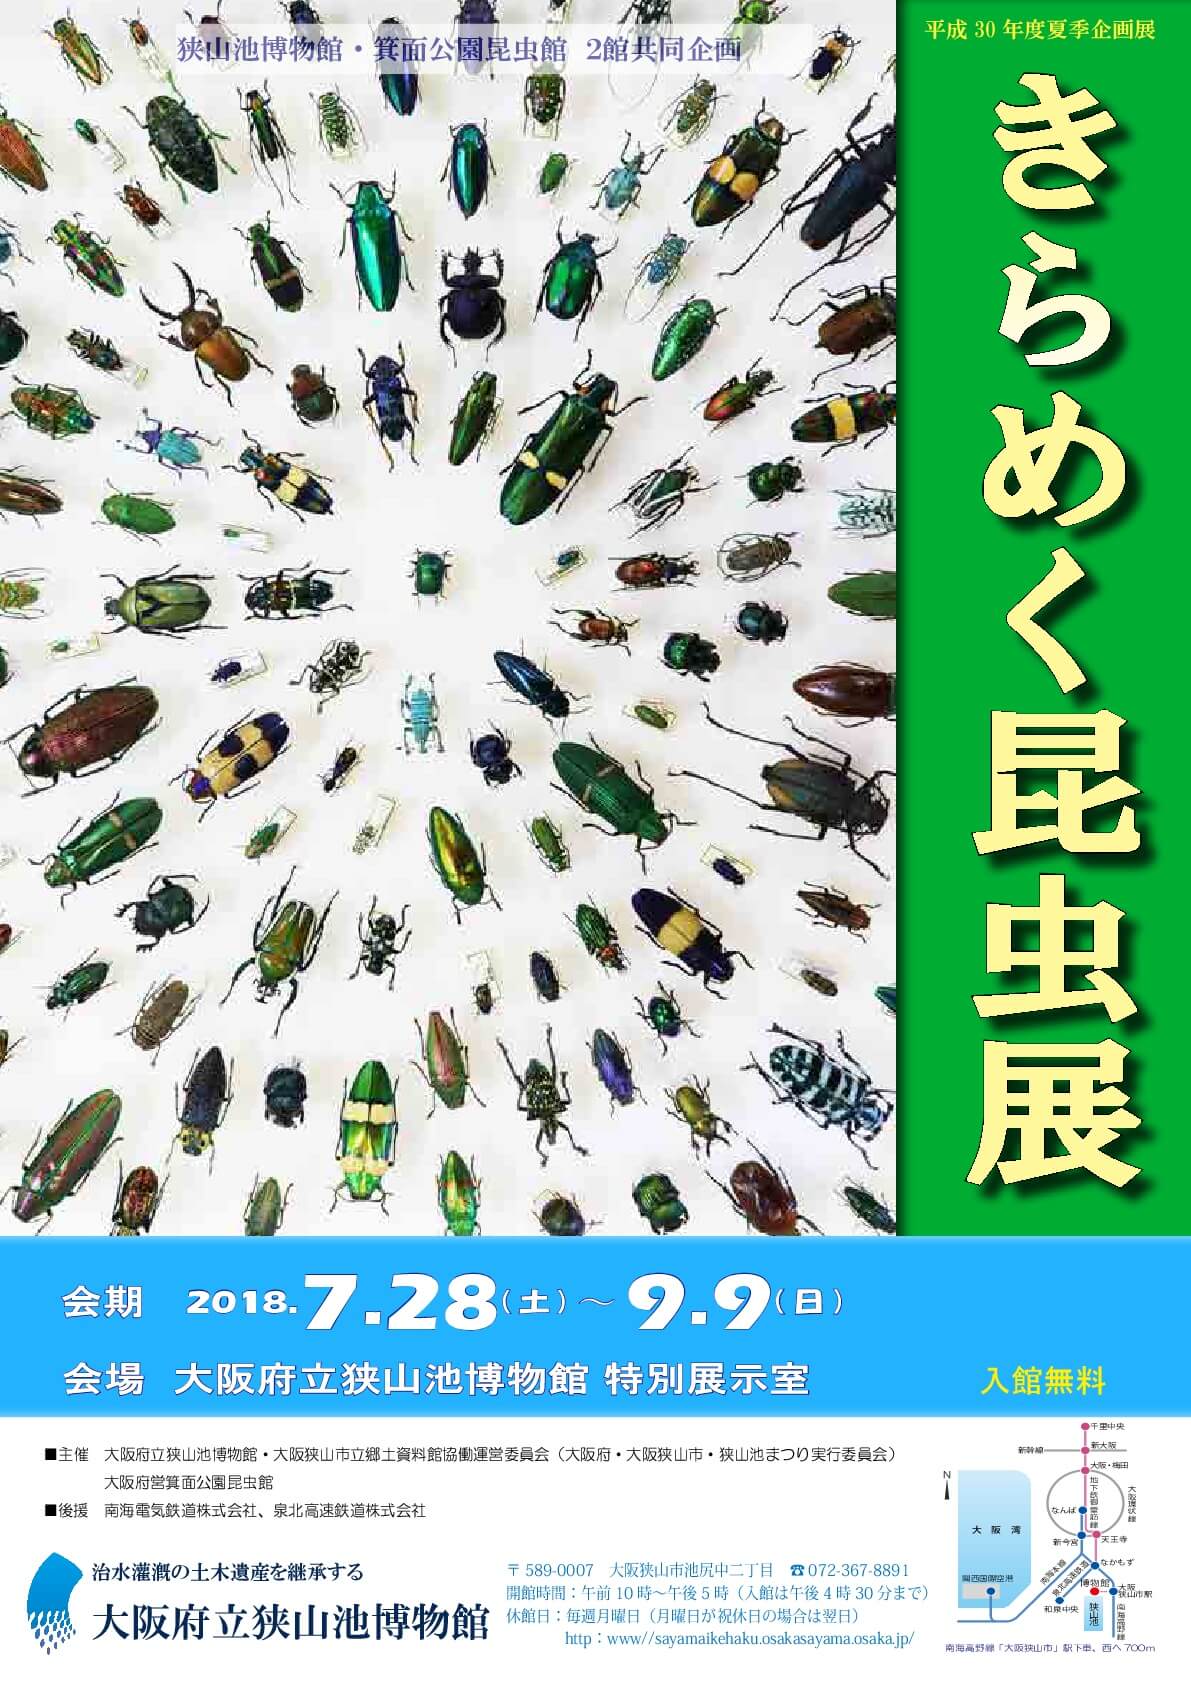 平成30年度夏季企画展「きらめく昆虫展」